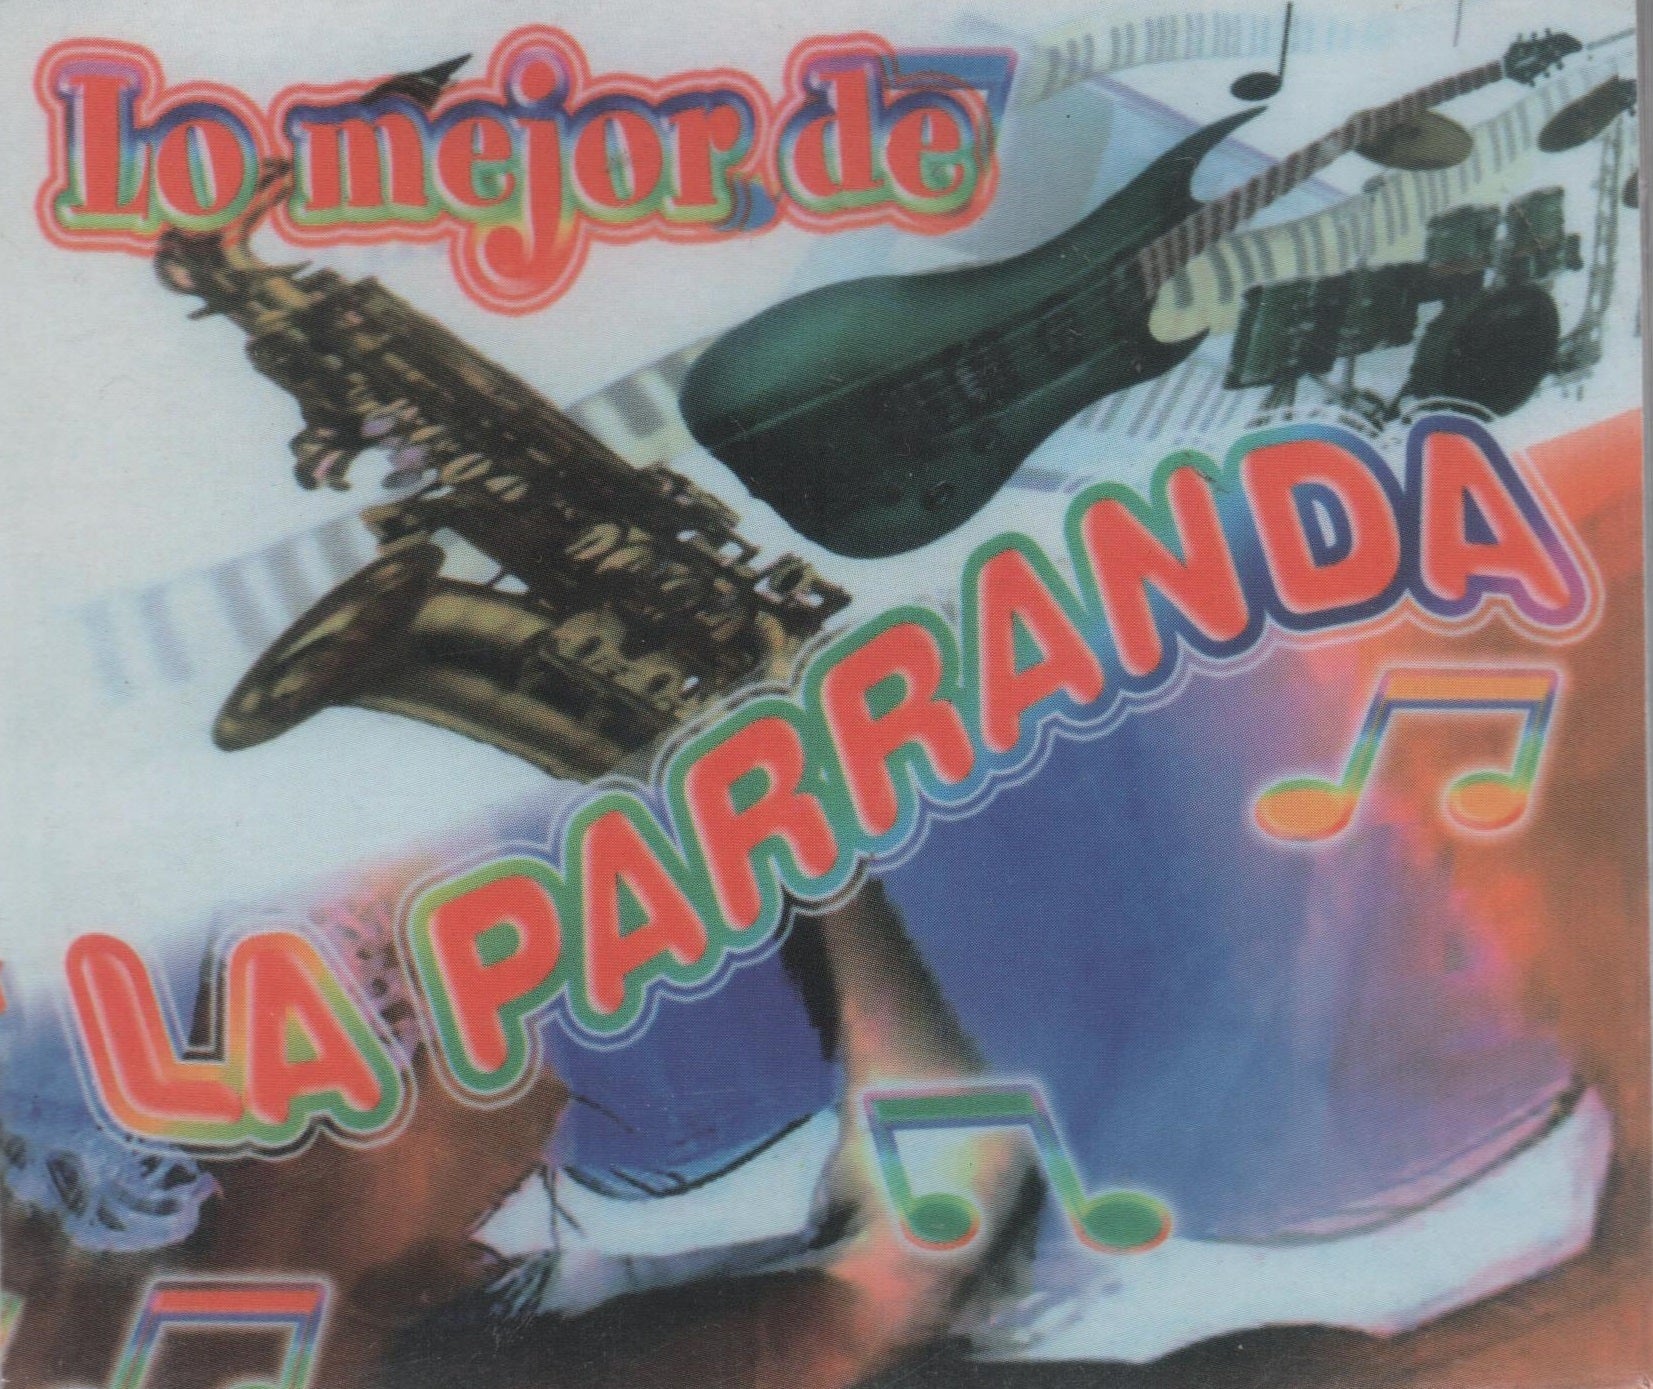 CDX2 Lo Mejor De La Parranda - Discos Victoria - Americana Discos G.A